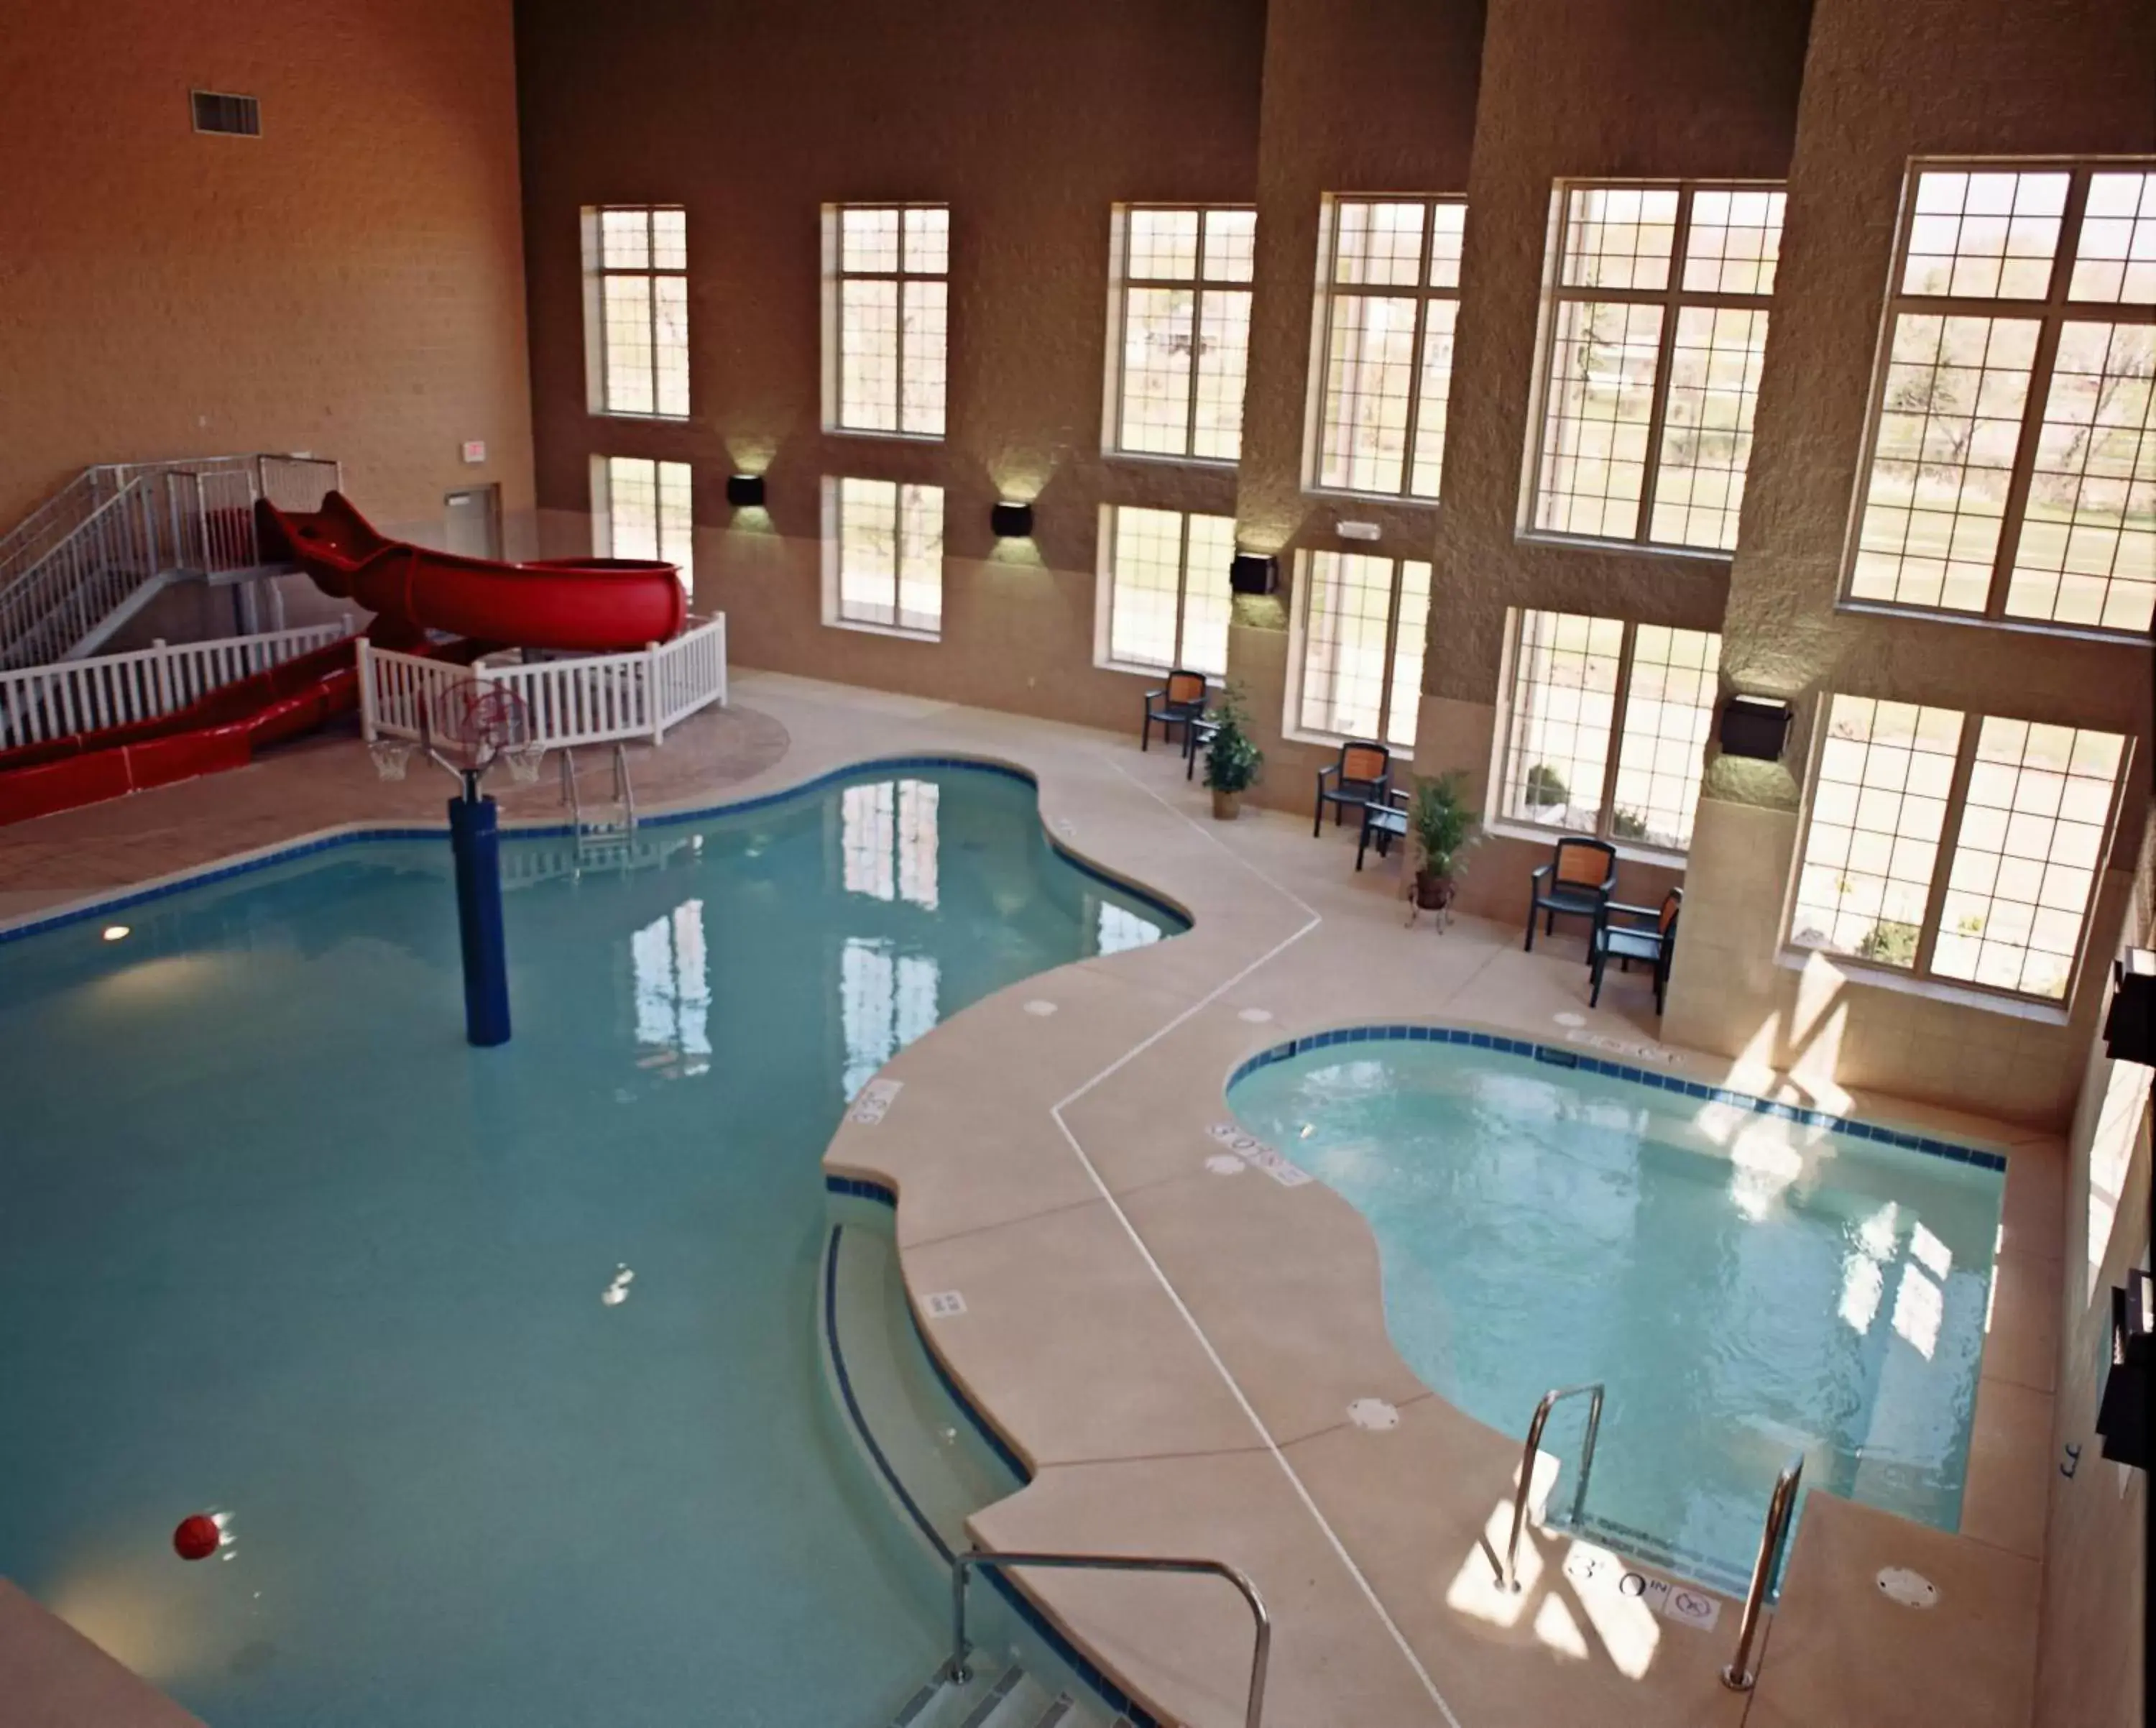 Swimming Pool in Best Western Premier Bridgewood Hotel Resort